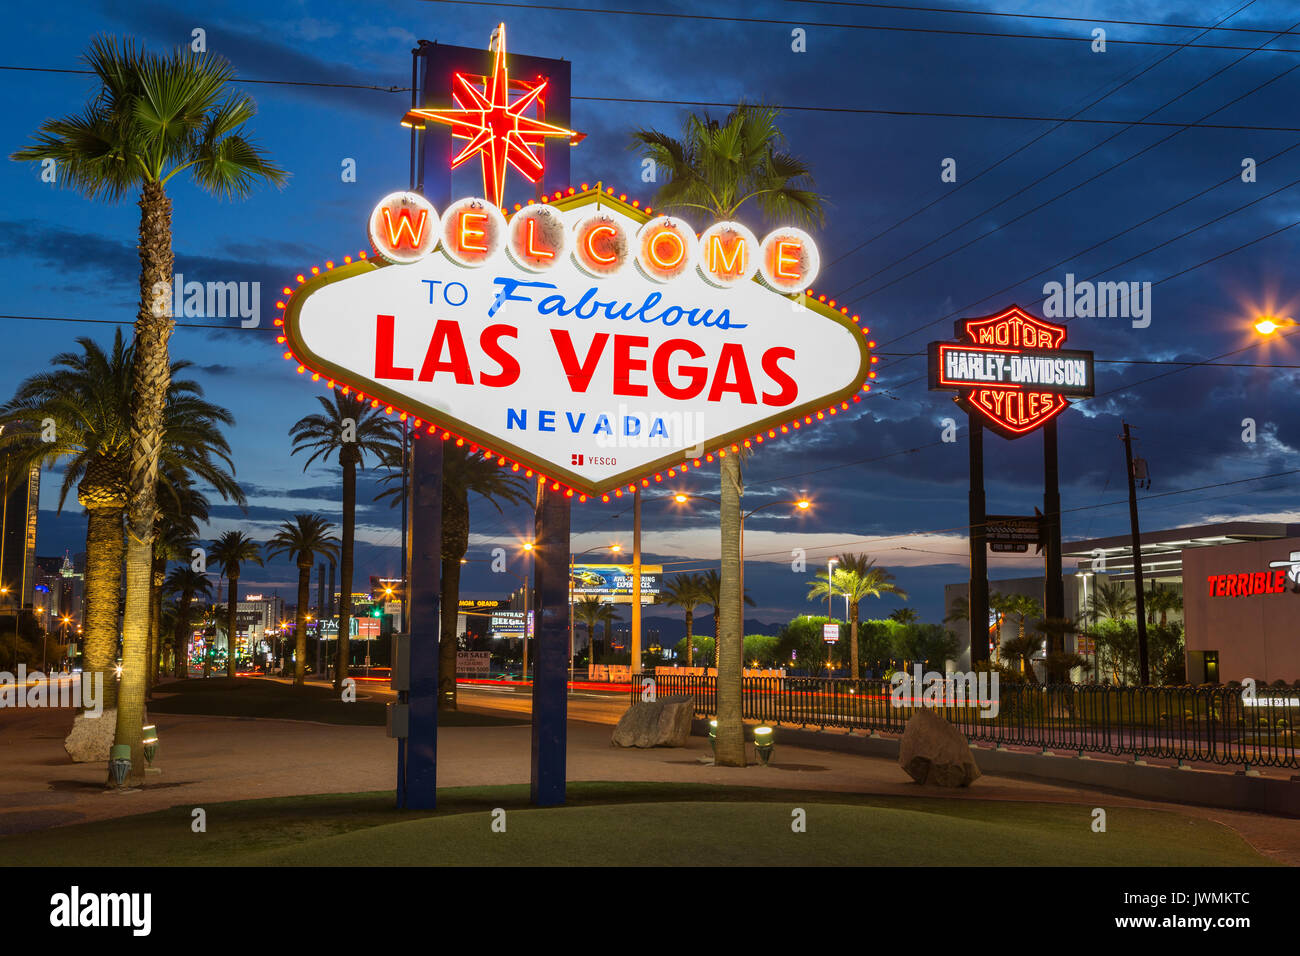 Die kultige "Willkommen bei neon Fabulous Las Vegas' Zeichen grüßt Besucher zu Las Vegas Reisen nördlich auf den Las Vegas Strip. Stockfoto